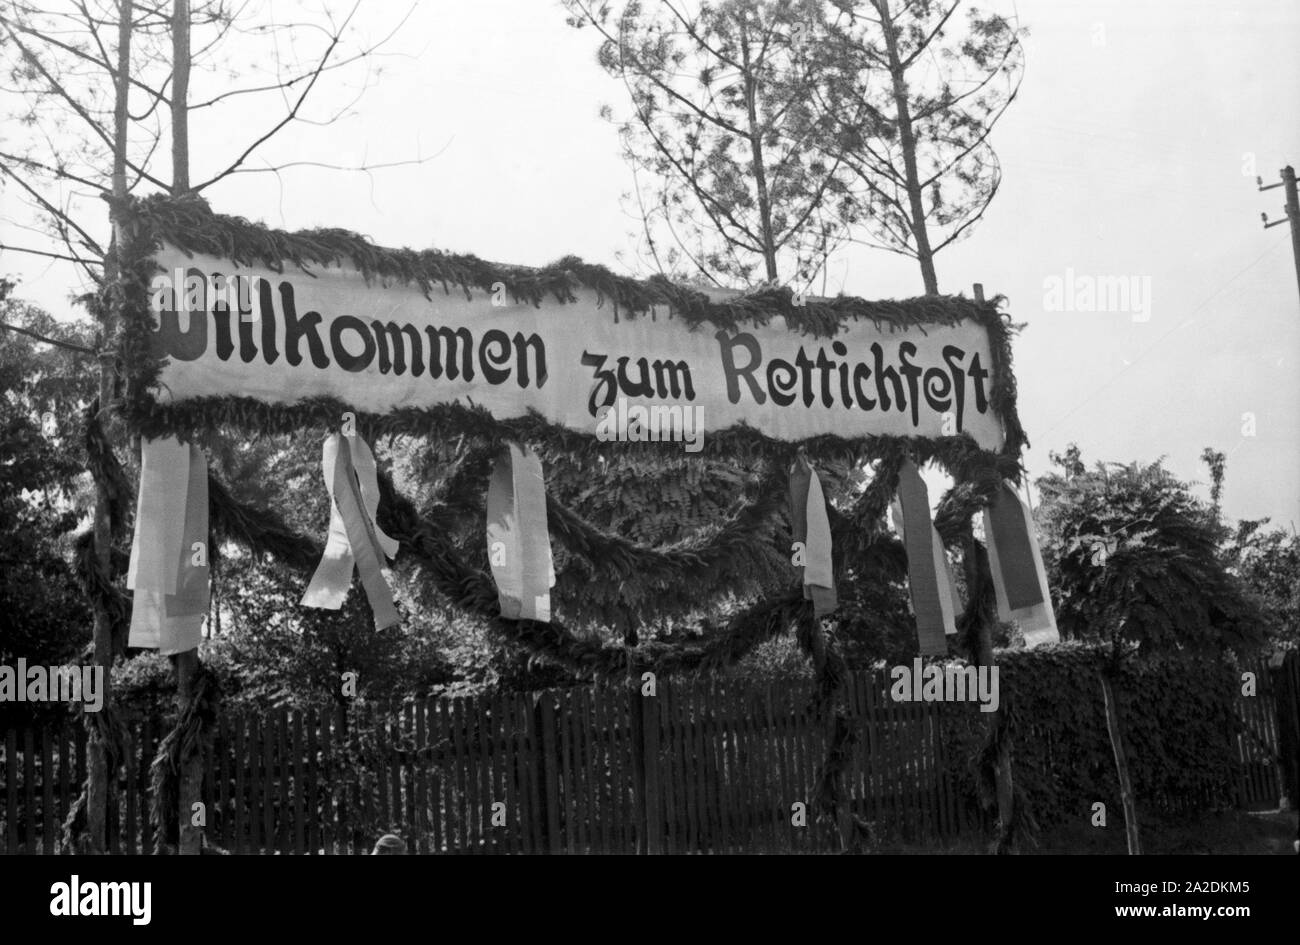 Dans Rettichfest Willkommensschild Das zum Schifferstadt, Deutschland 1930 er Jahre. Panneau de bienvenue à l'assemblée juste radis à Schifferstadt, Allemagne 1930. Banque D'Images